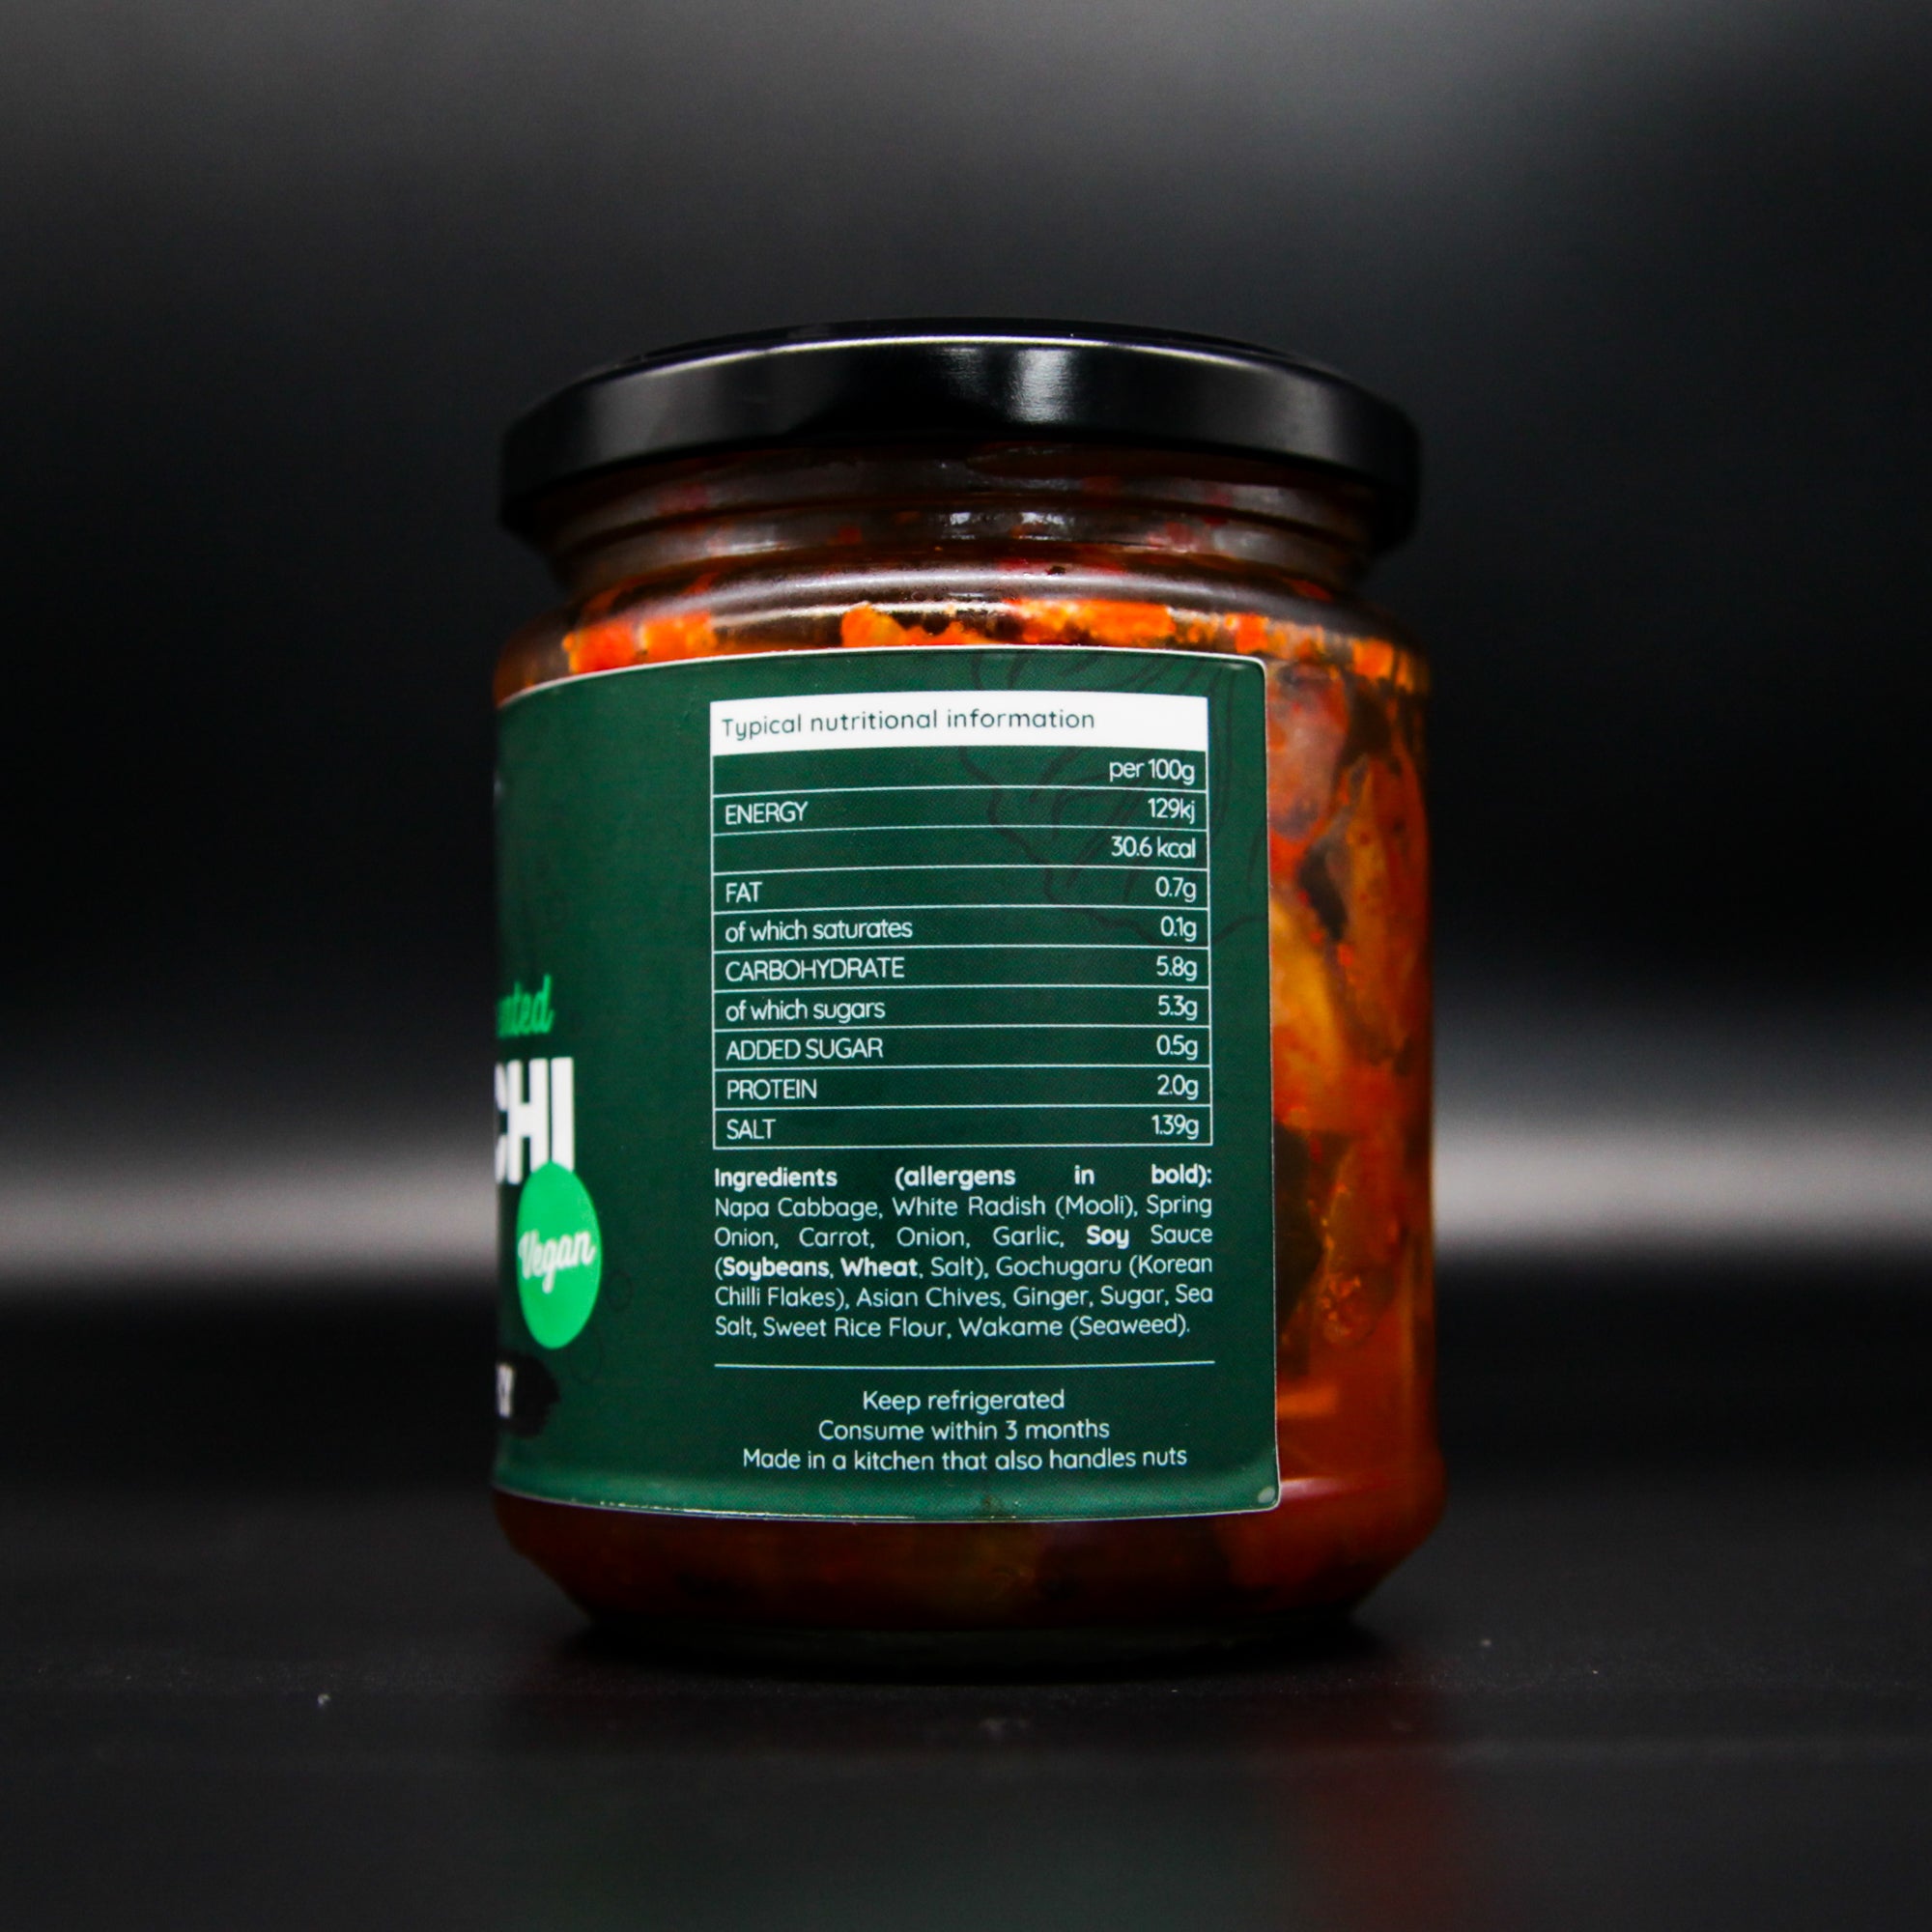 Condimaniac wild-fermented Kimchi (vegan) - *Please read description before purchase*